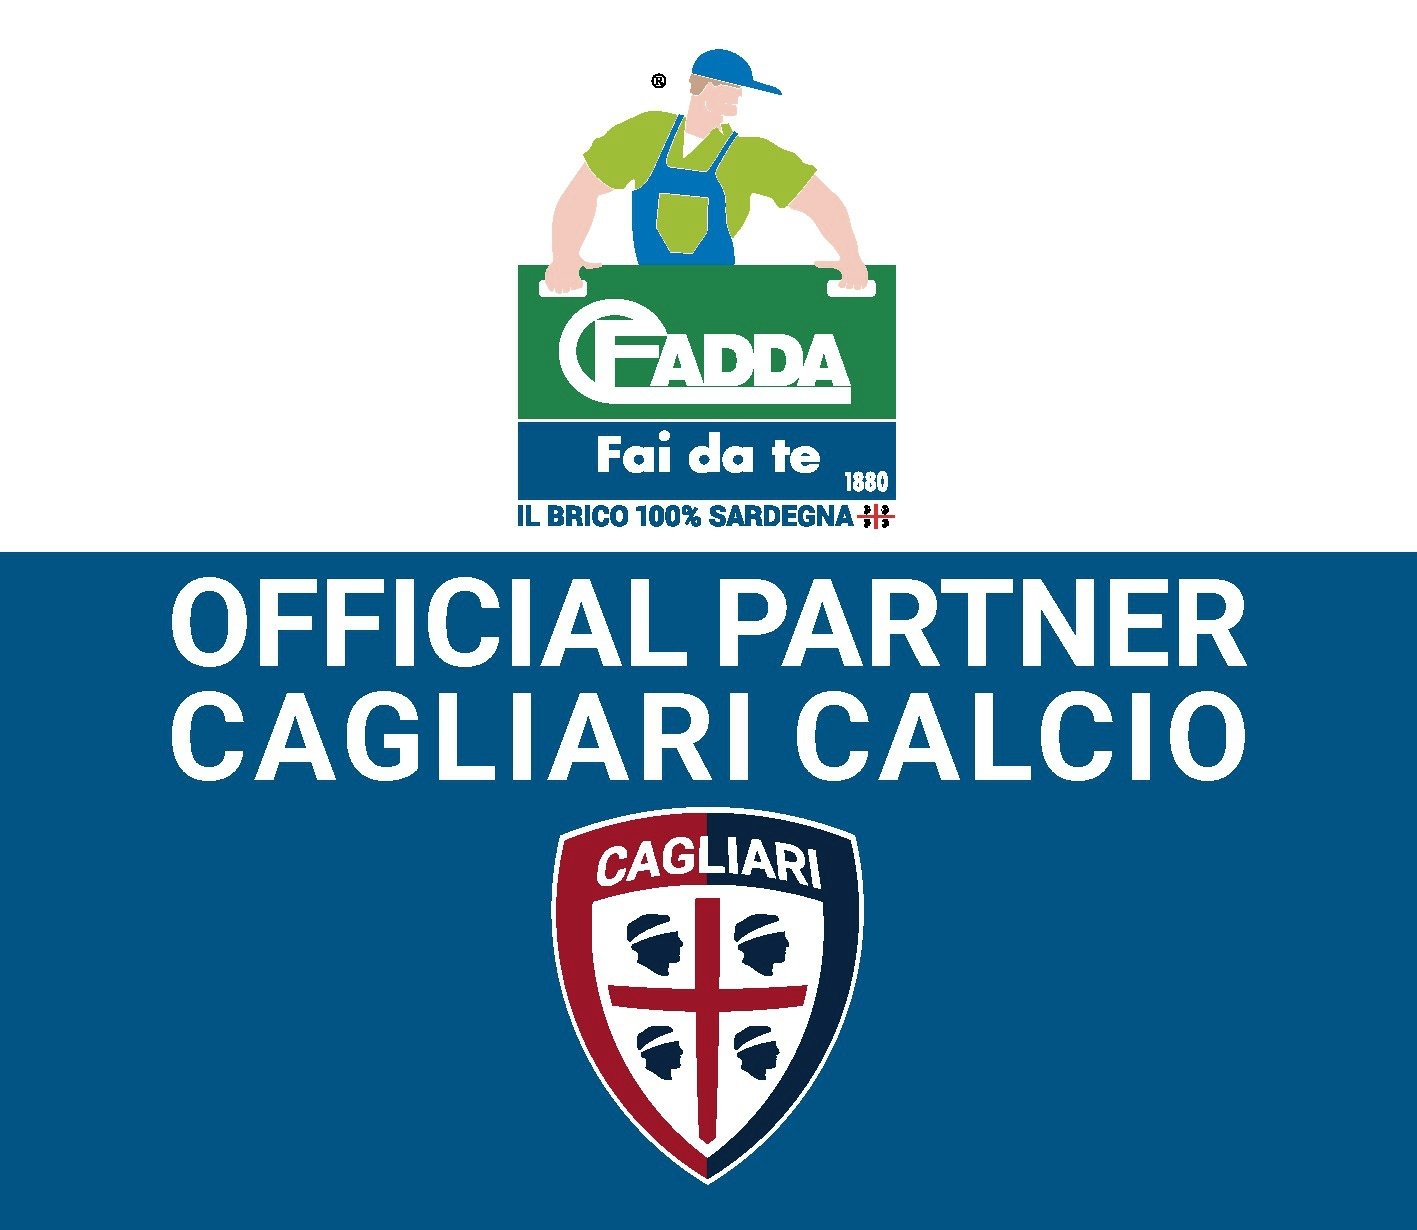 CFadda official partner Cagliari Calcio